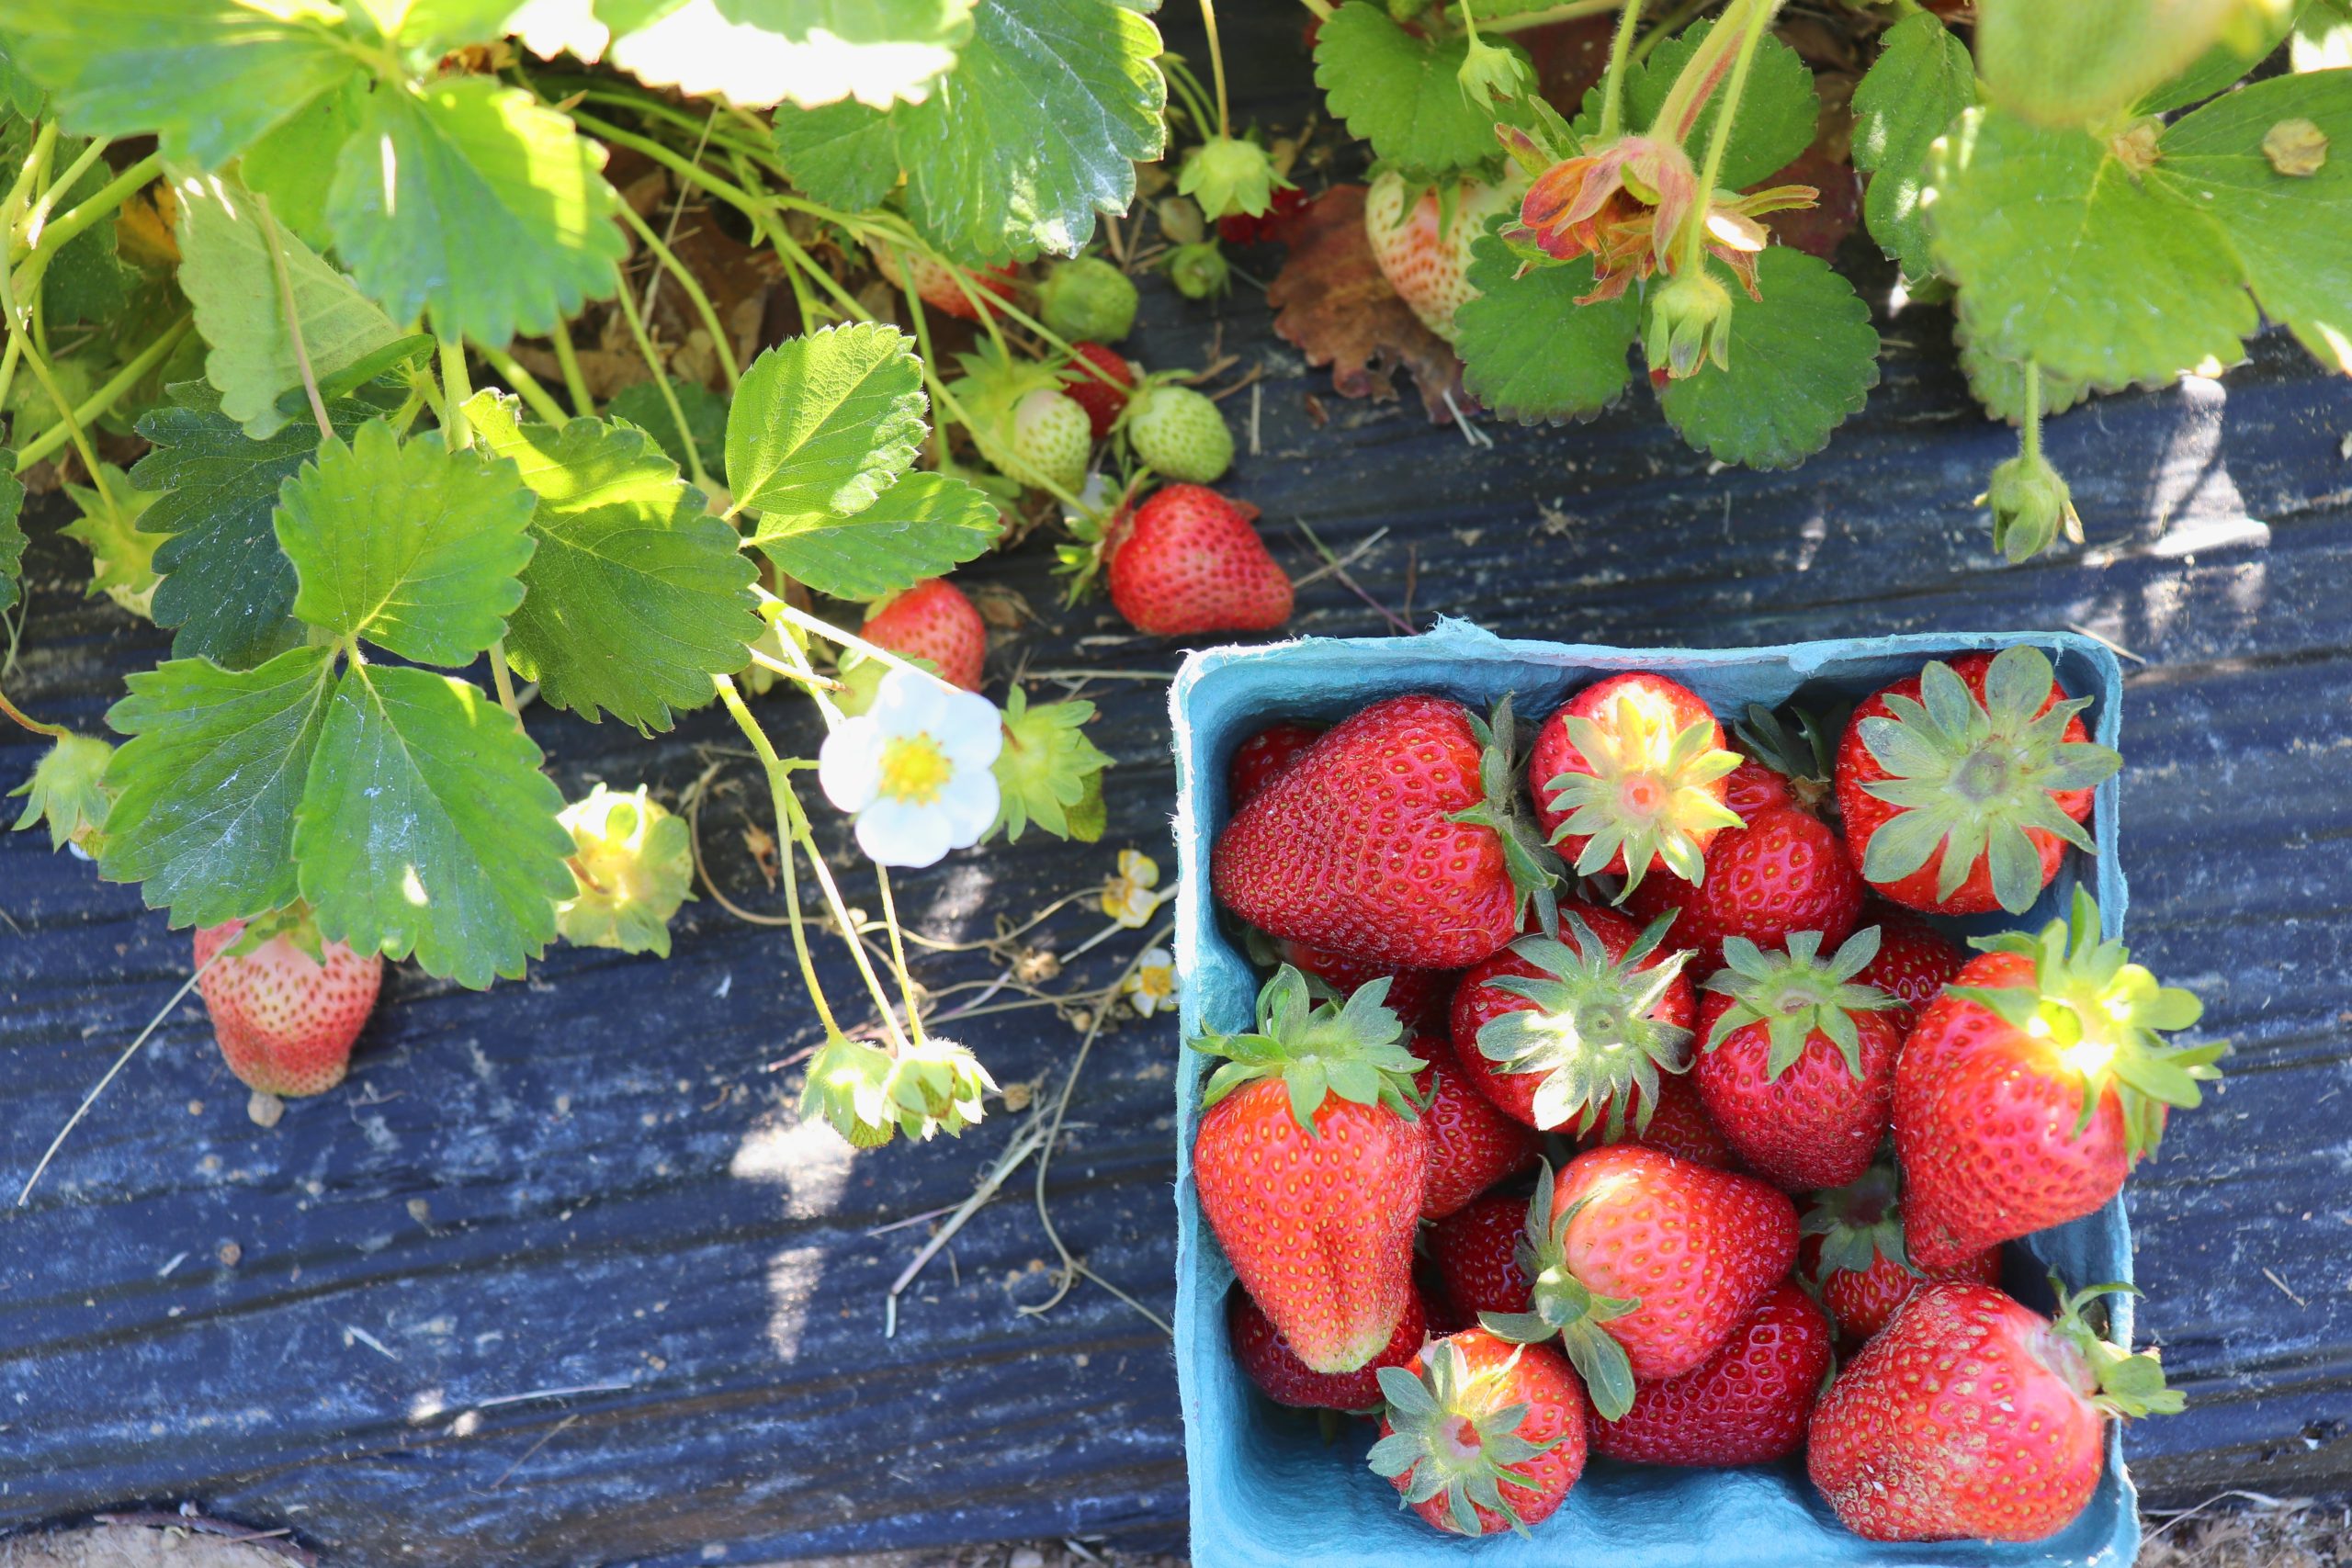 Enjoy Strawberry Picking at Lorenzen Family Farm